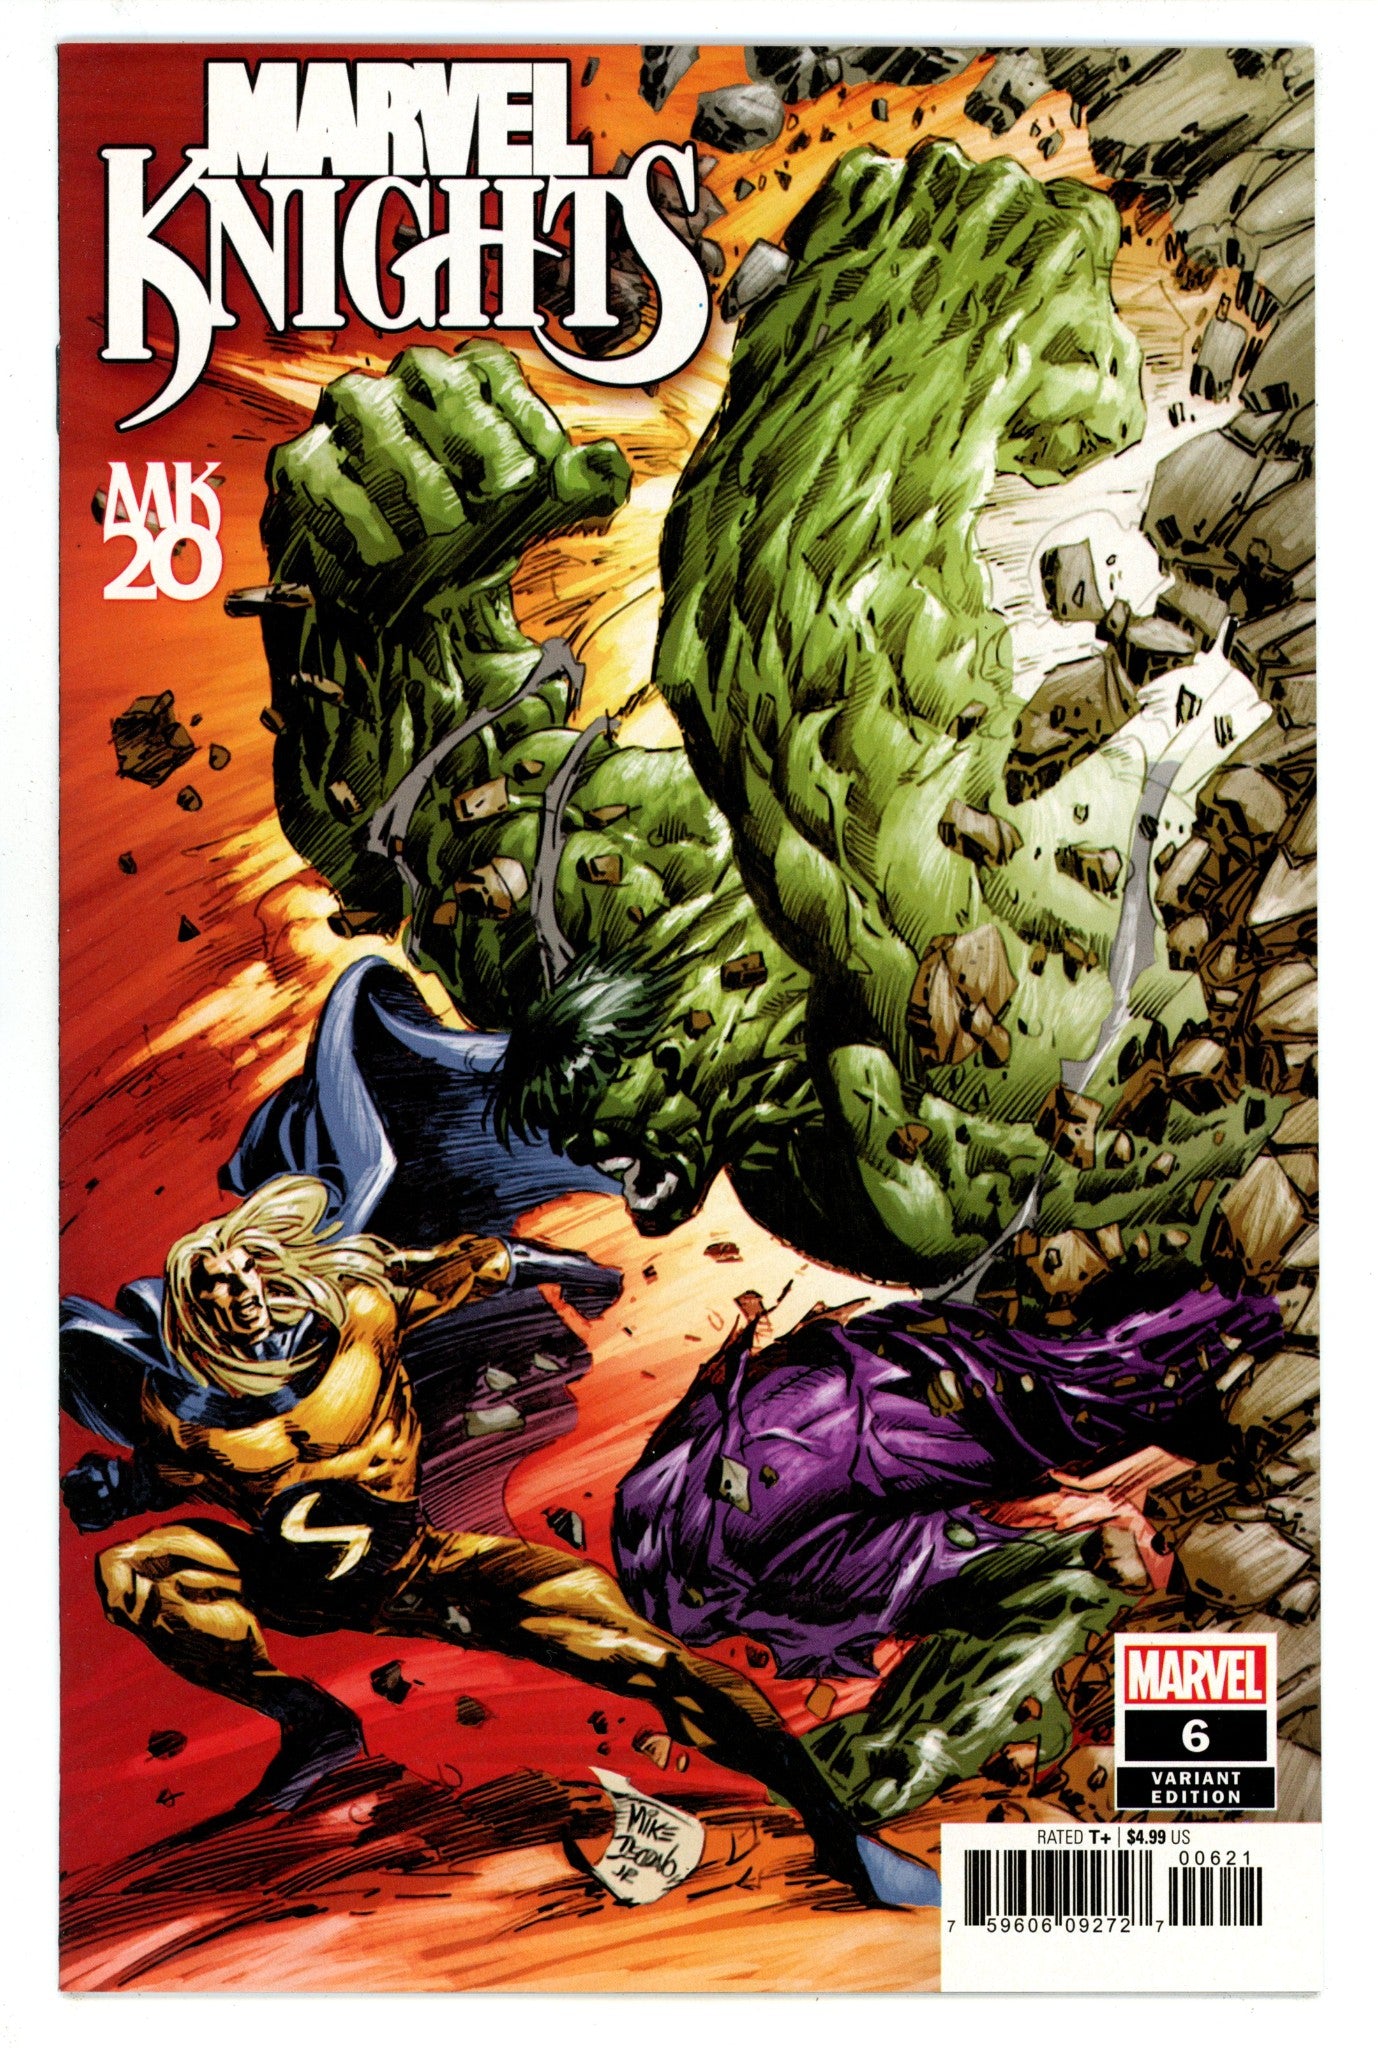 Marvel Knights 20th Vol 3 6 High Grade (2019) Deodato Variant 